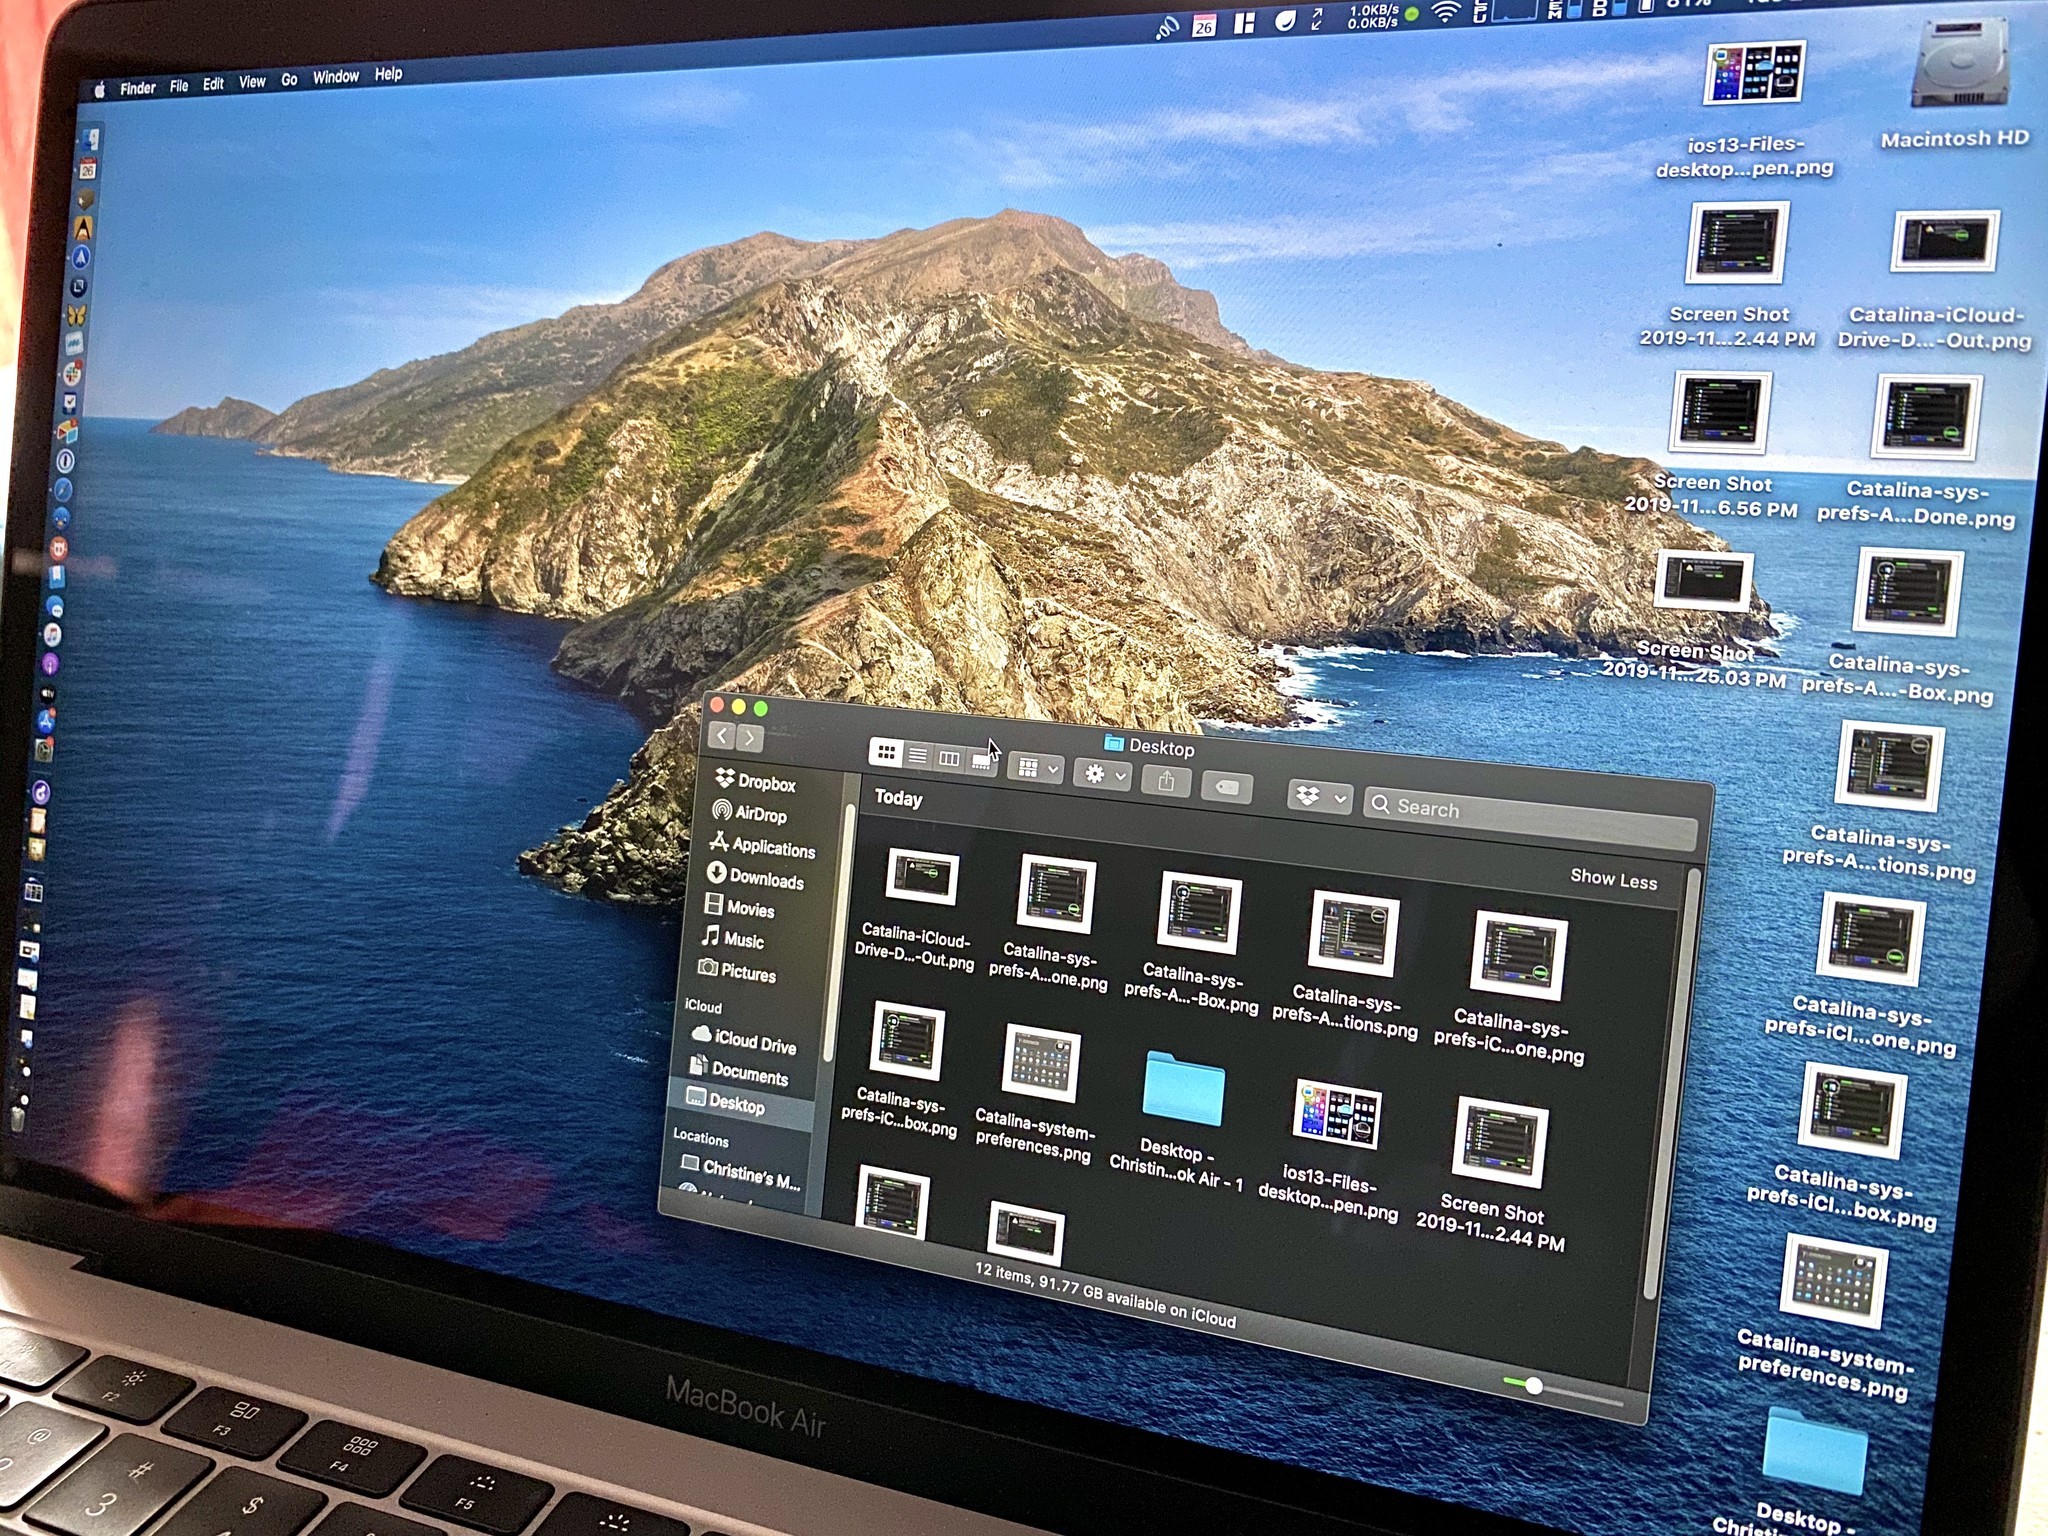 iCloud Drive Desktop folder on a MacBook Air running Catalina